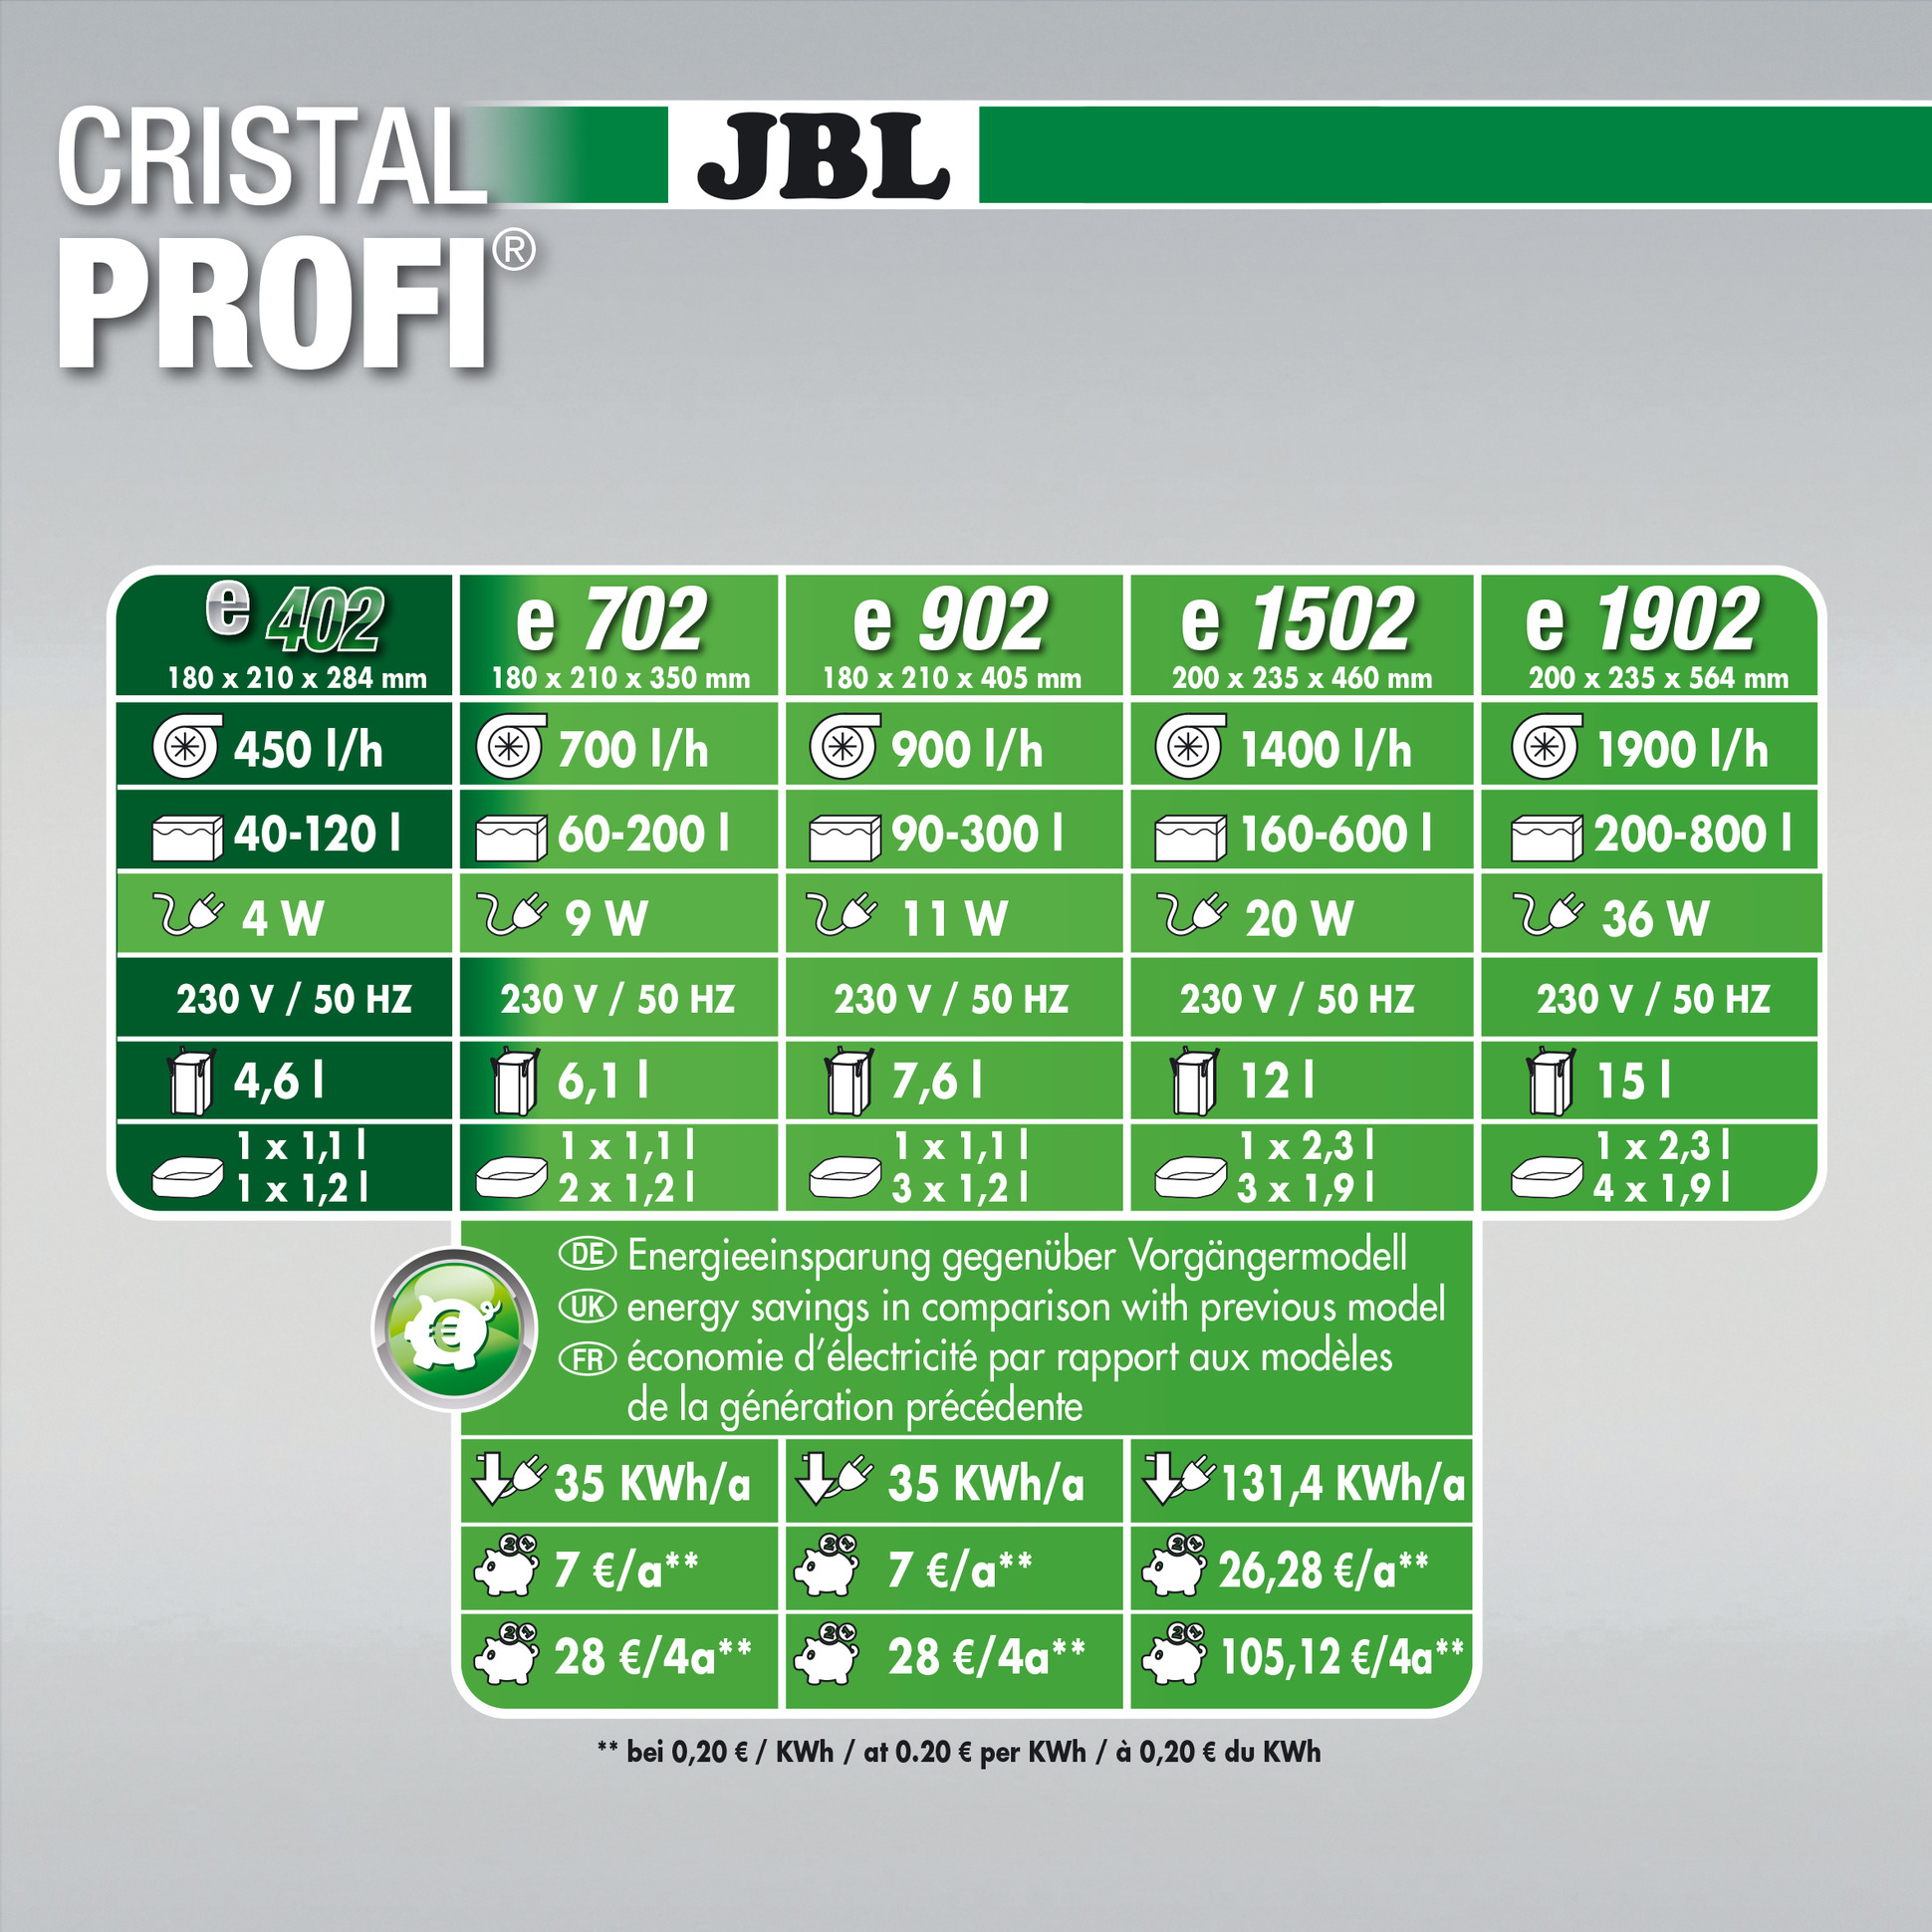 JBL CristalProfi e402 filtre externe - aquarium de 40 à 120l 